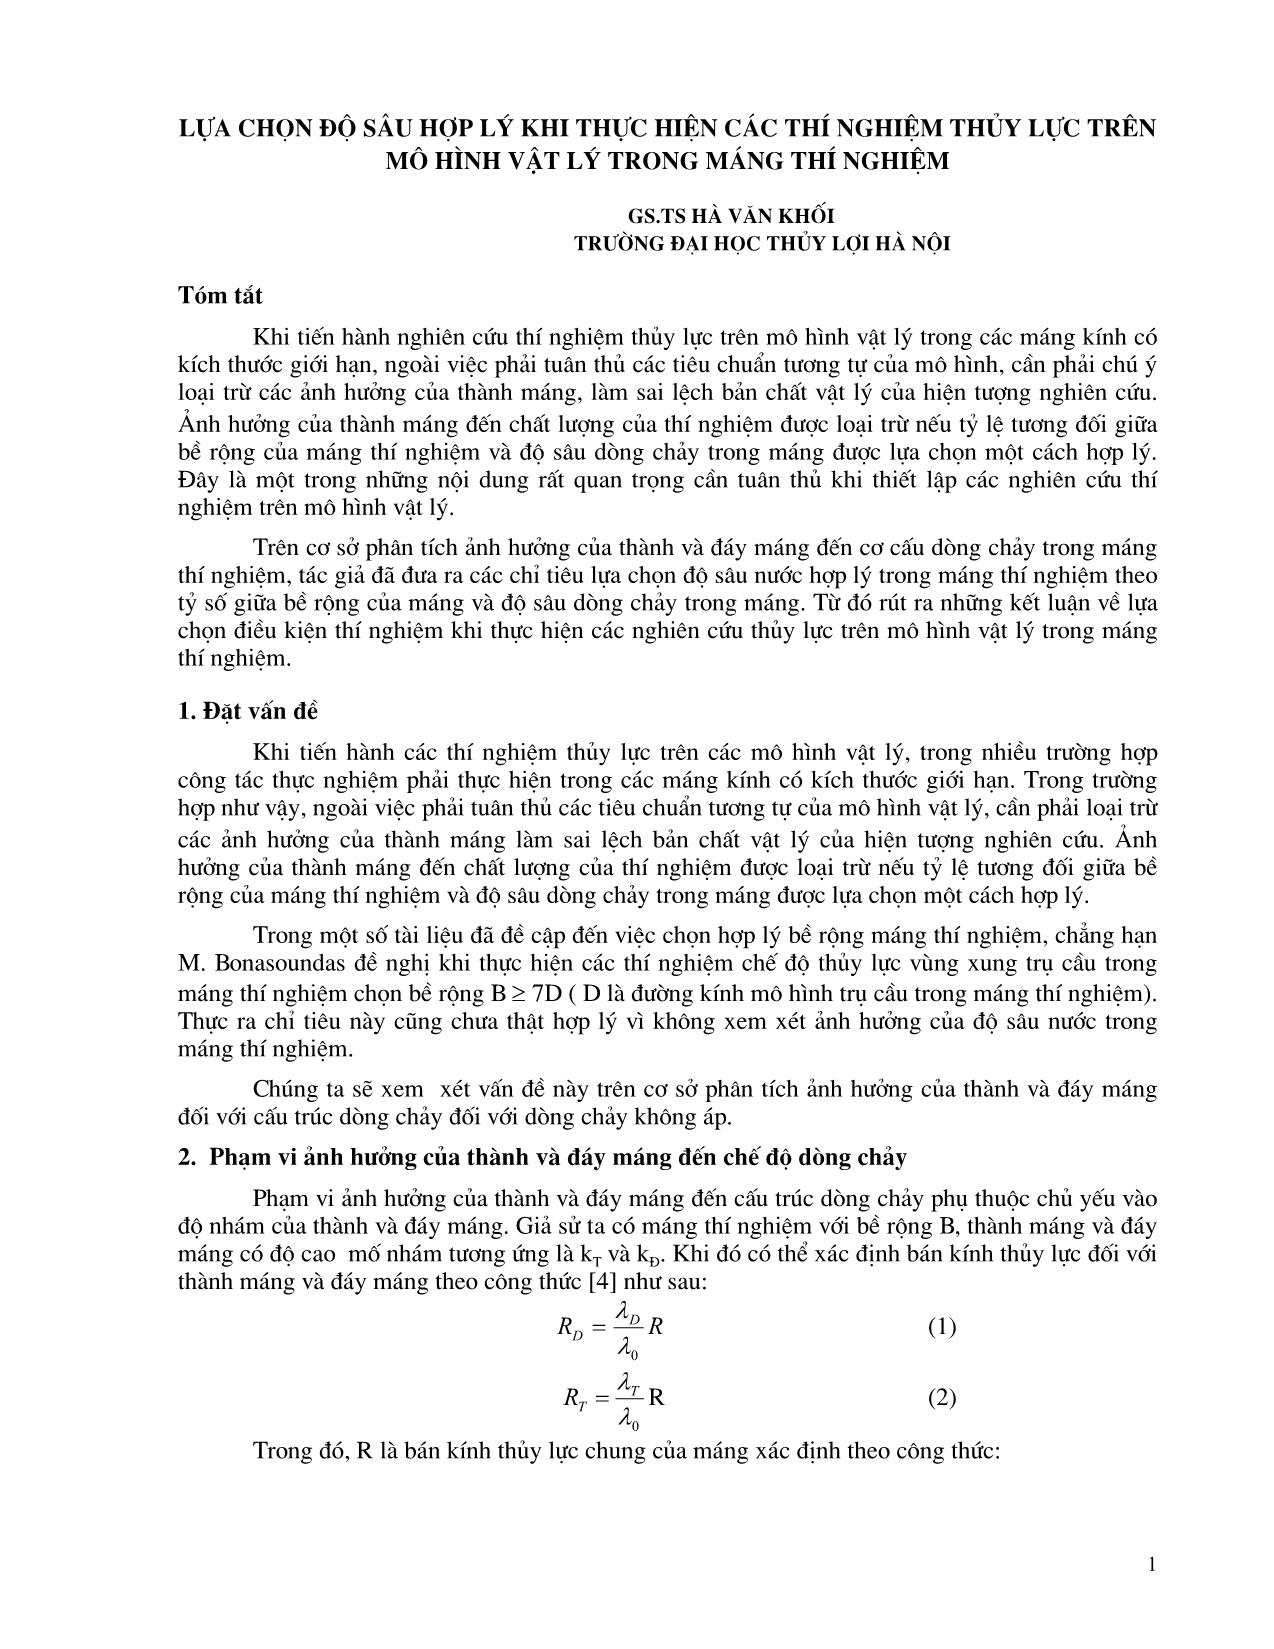 Lựa chọn độ sâu hợp lý khi thực hiện các thí nghiệm thủy lực trên mô hình vật lý trong máng thí nghiệm trang 1